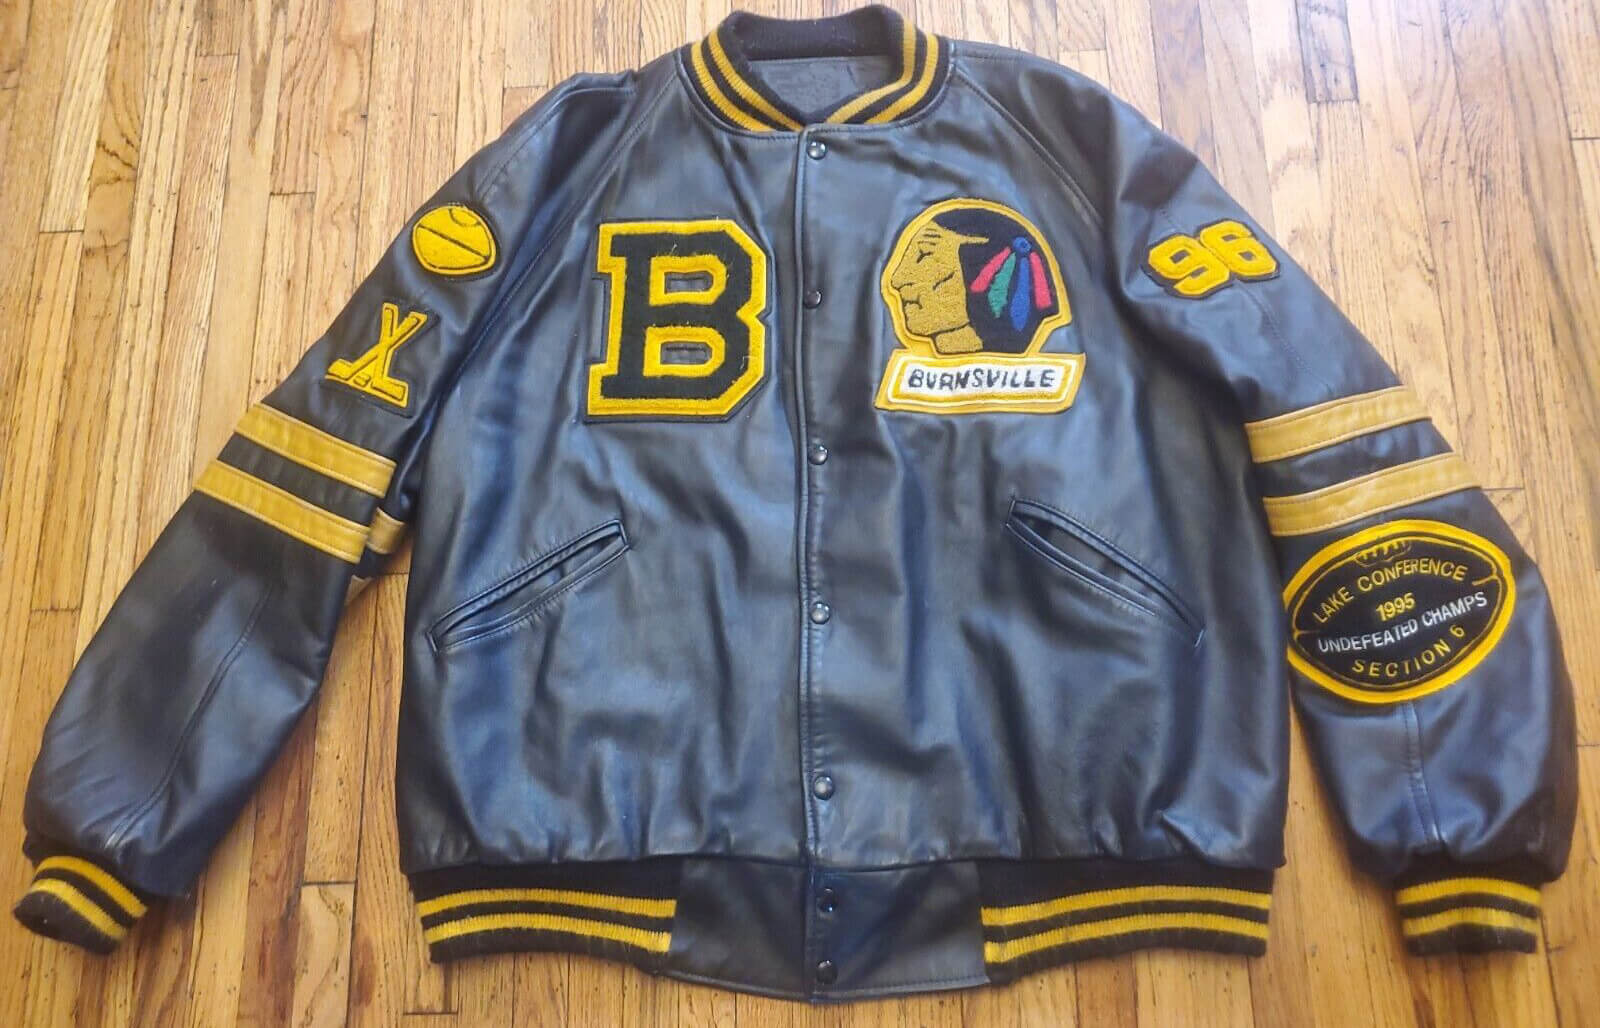 Maker of Jacket Fashion Jackets Vintage Braves Burnsville Leather Letterman